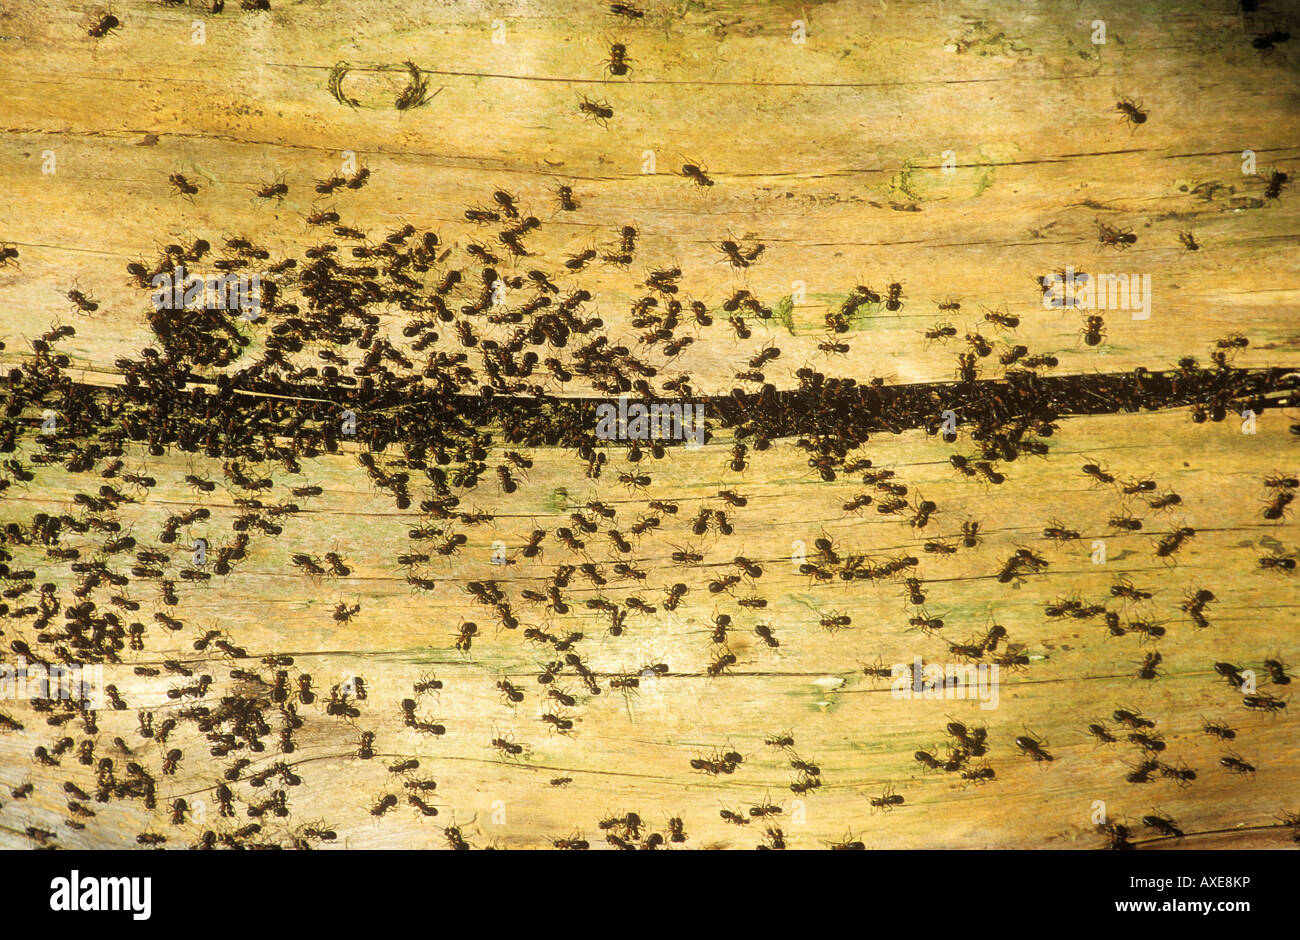 Hormiga de madera roja (Formica rufa). Un montón de hormigas en la habitación Foto de stock